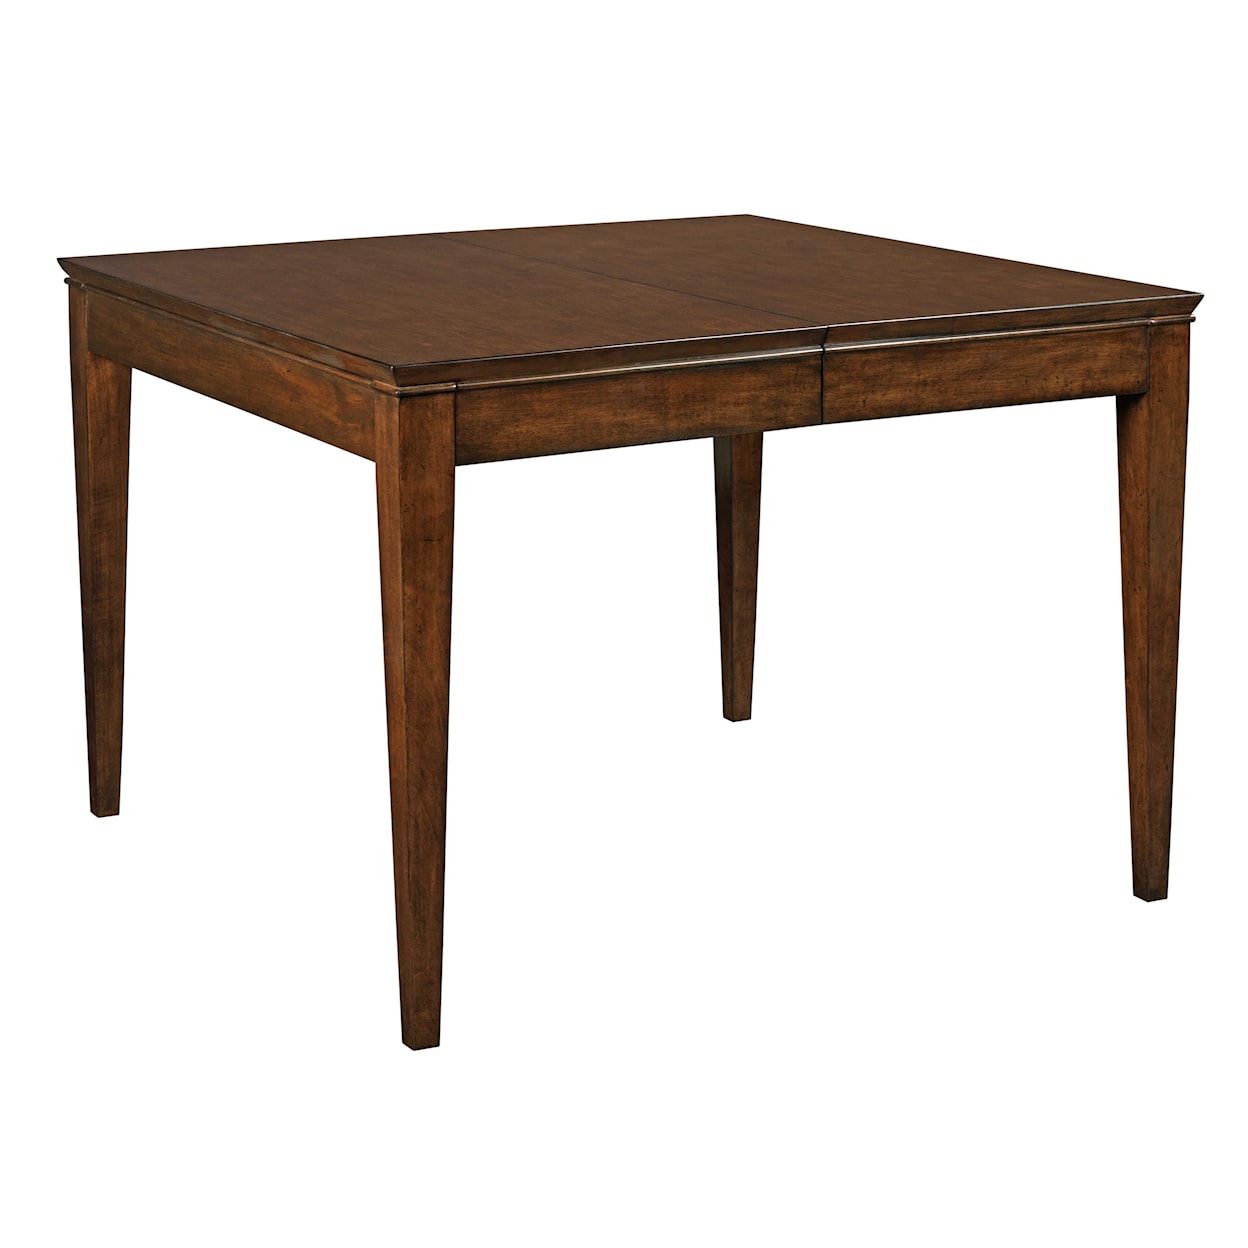 Kincaid Furniture Elise Leg Table